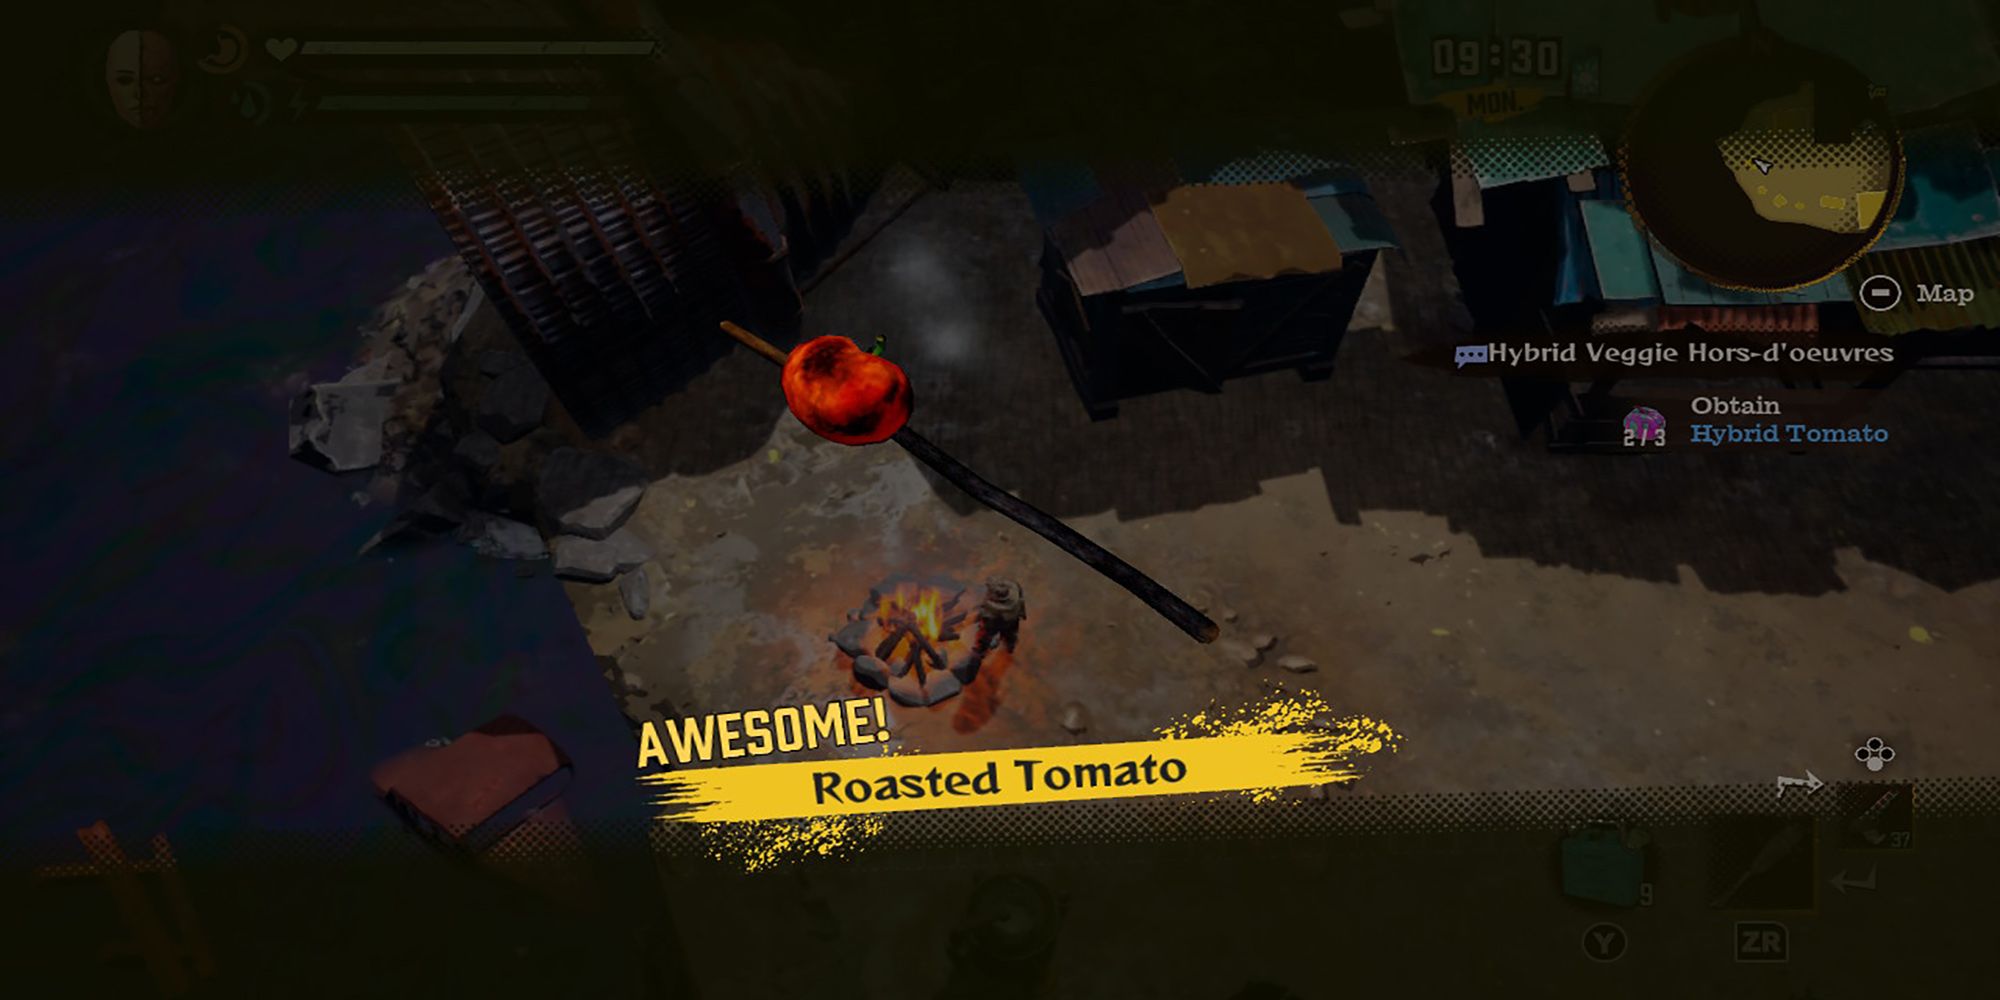 Roasted Tomato, fresh from Reid's fire pit in Deadcraft.